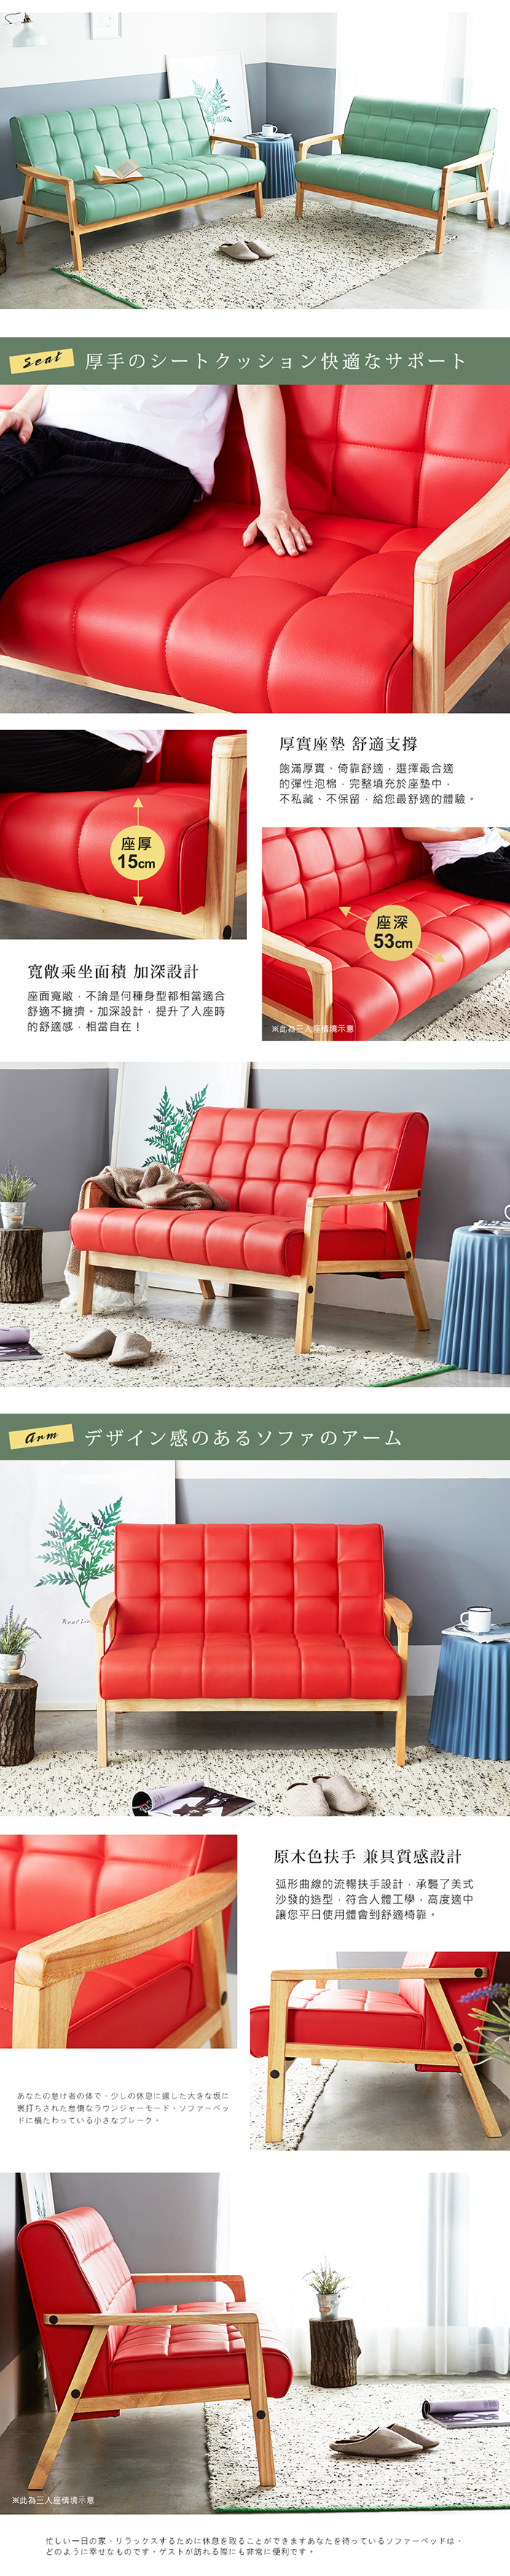 皮沙發 雙人座 摩卡北歐日式亮彩雙人沙發-3色 / H&D東稻家居